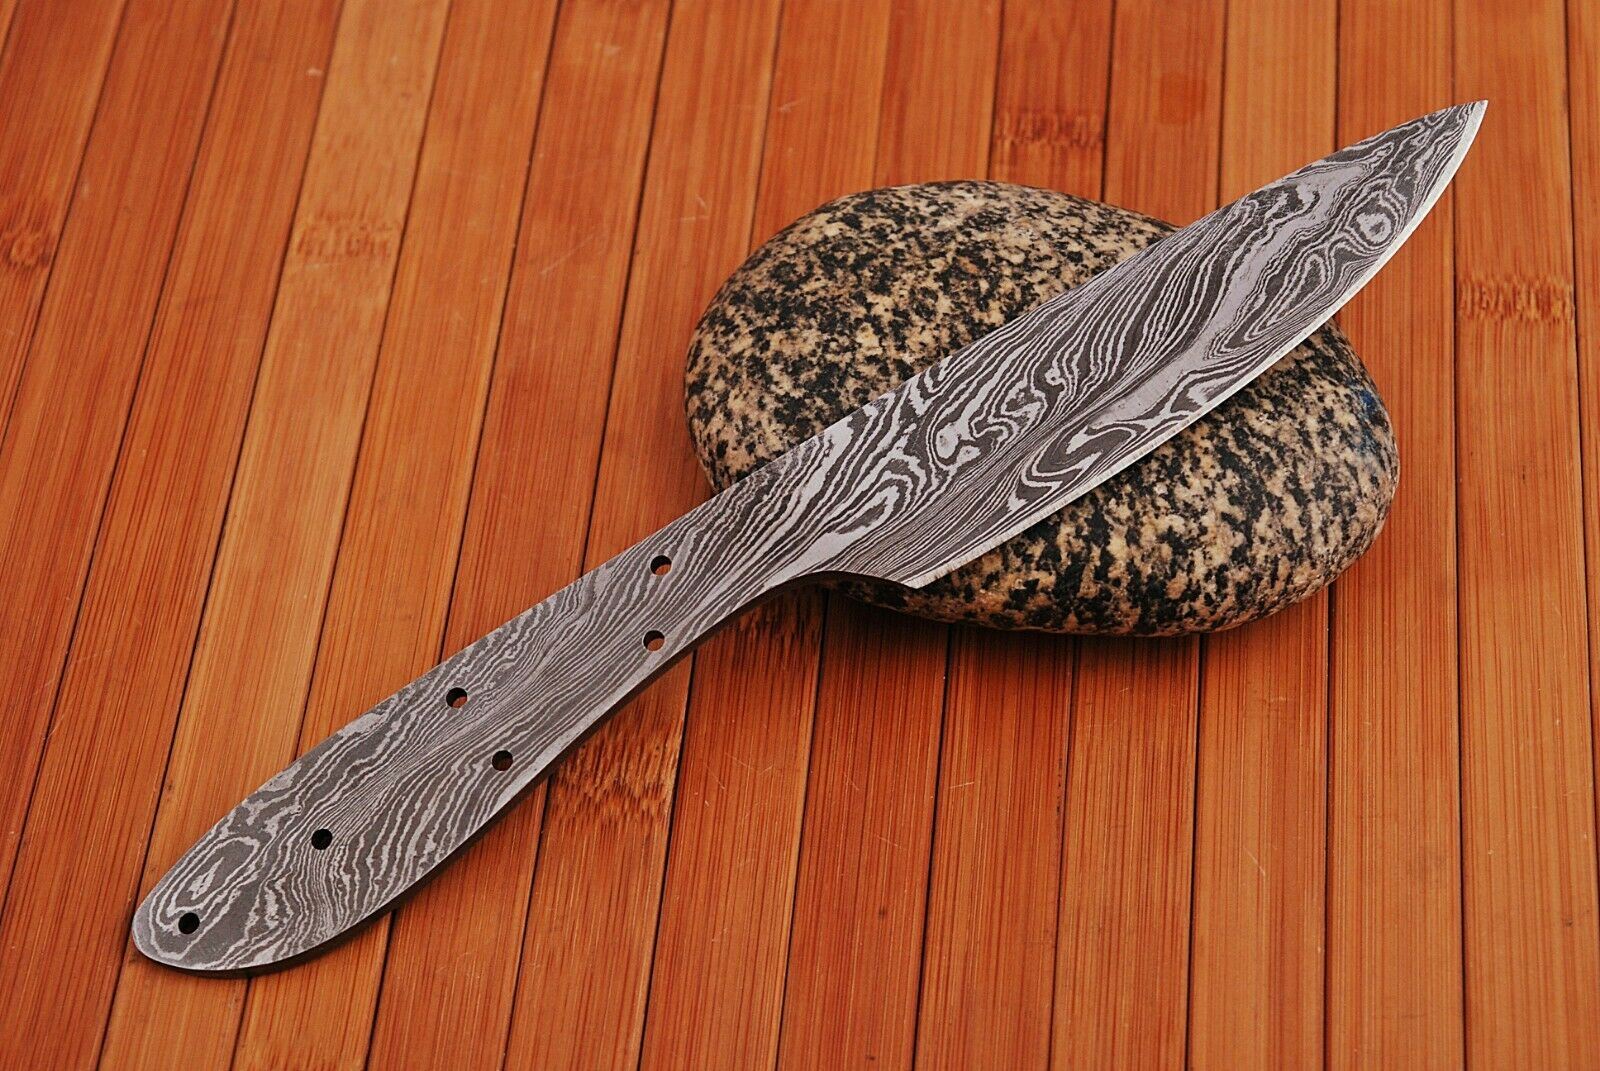 Custom Handmade Damascus Steel Blank Blade for Knife Making